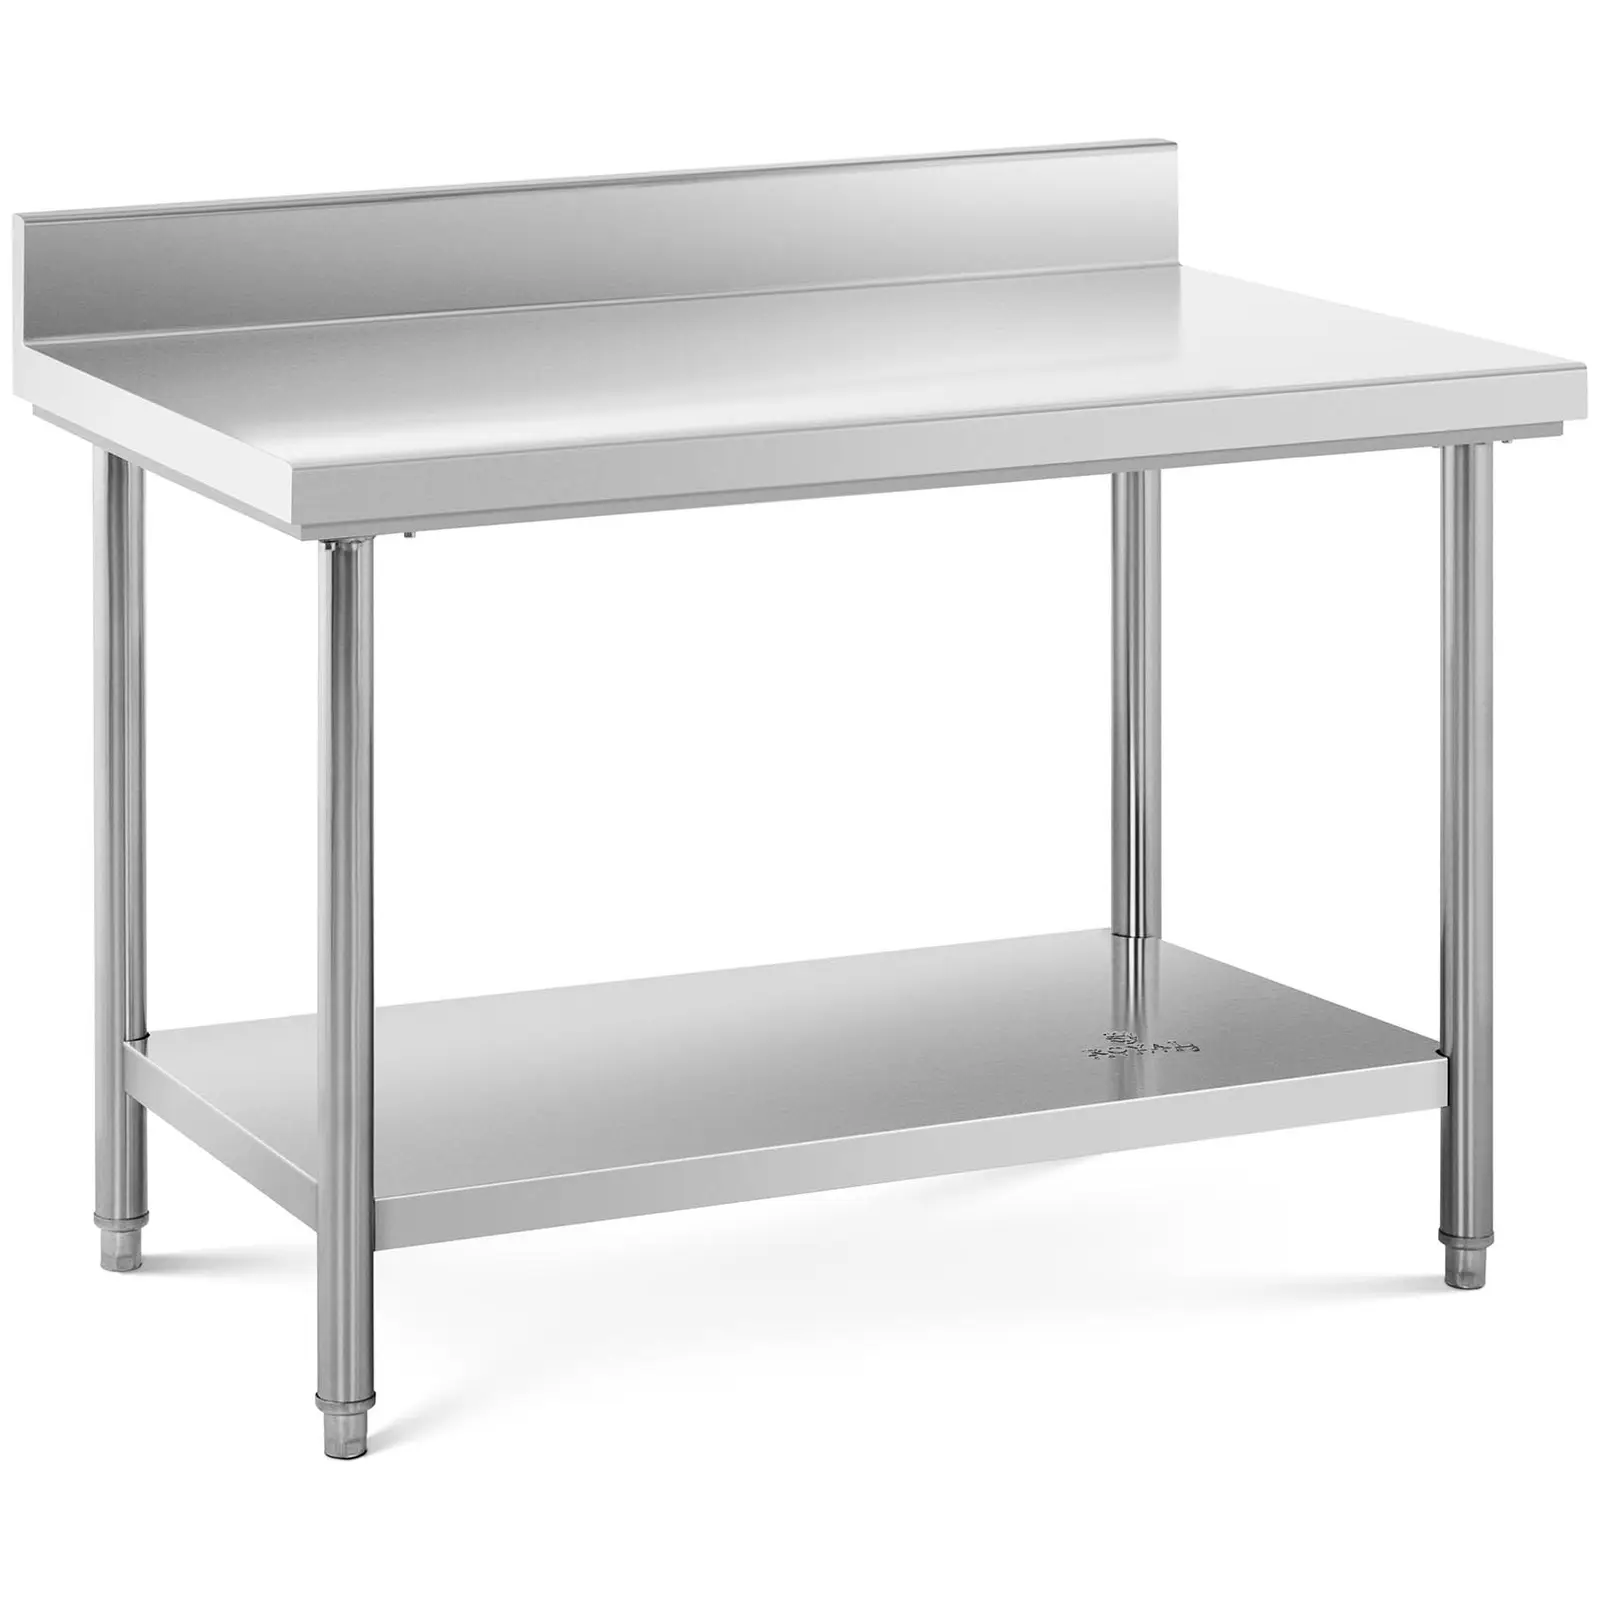 Rozsdamentes acél asztal - 120 x 70 cm - karima - 143 kg-os teherbírás